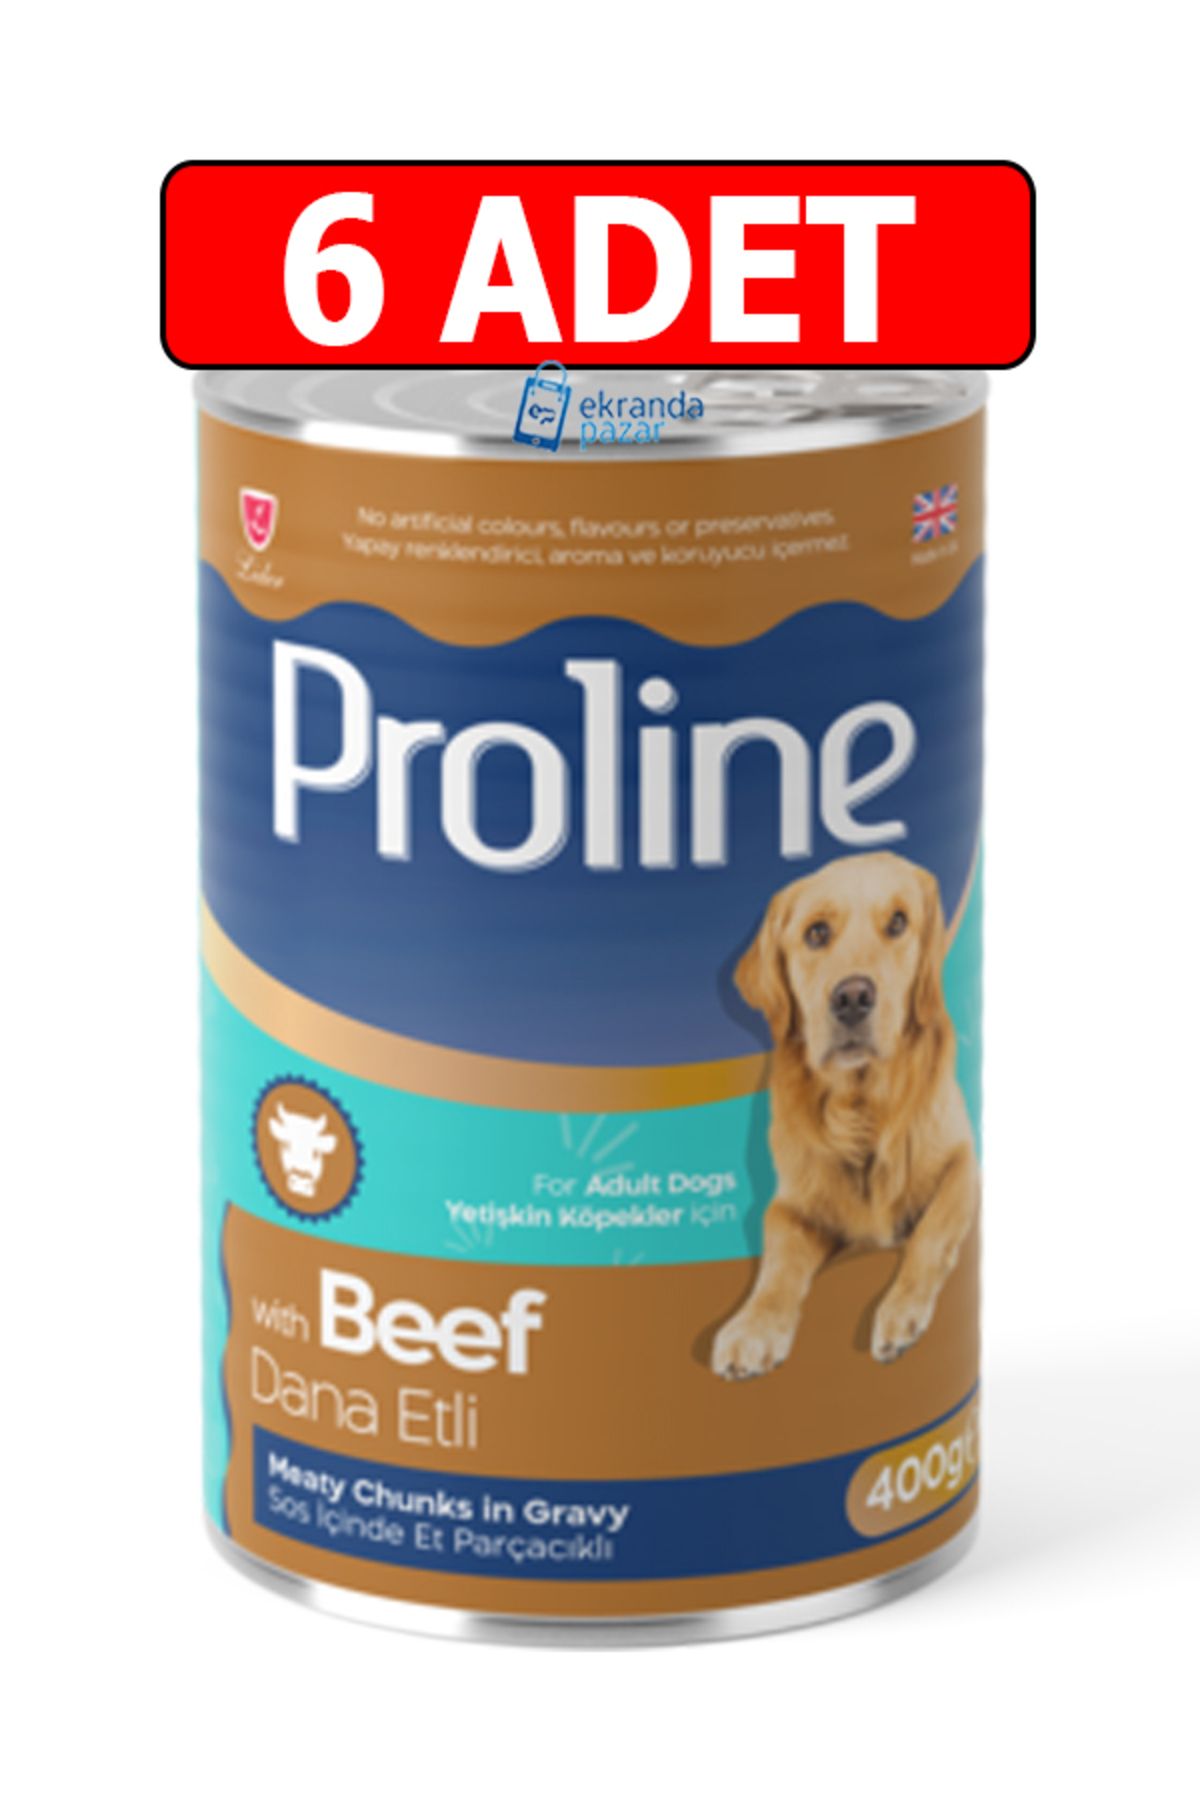 Pro Line Proline dana etli beef biftekli sos içinde et parçalı köpek konservesi 6adet 400gr köpek yaş mama